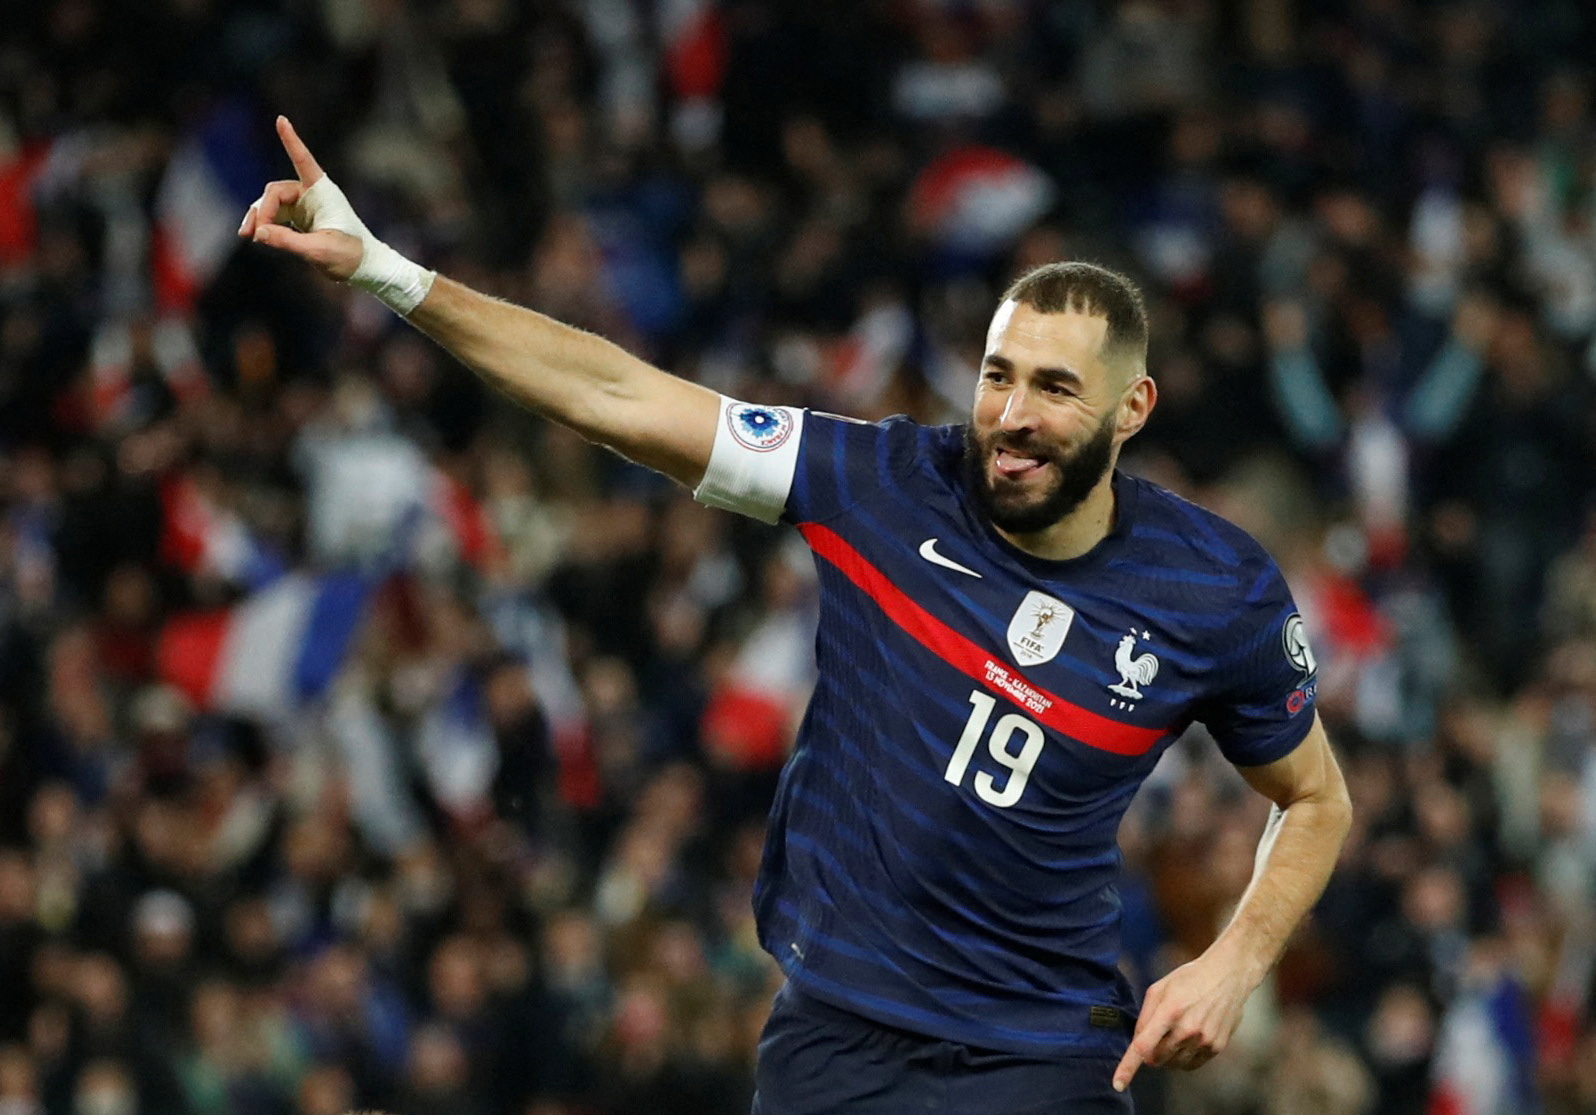 Đội hình đội tuyển Pháp World Cup 2022
Đội tuyển Pháp với đội hình vô cùng ấn tượng sẽ là niềm hy vọng của những CĐV yêu bóng đá trên toàn thế giới. Sự xuất hiện của những siêu sao như Mbappe, Griezmann hay Pogba chắc chắn sẽ mang lại những màn trình diễn hoành tráng, đầy đặn cảm xúc. Đừng bỏ lỡ cơ hội được chiêm ngưỡng đội hình đẳng cấp này trên ảnh!